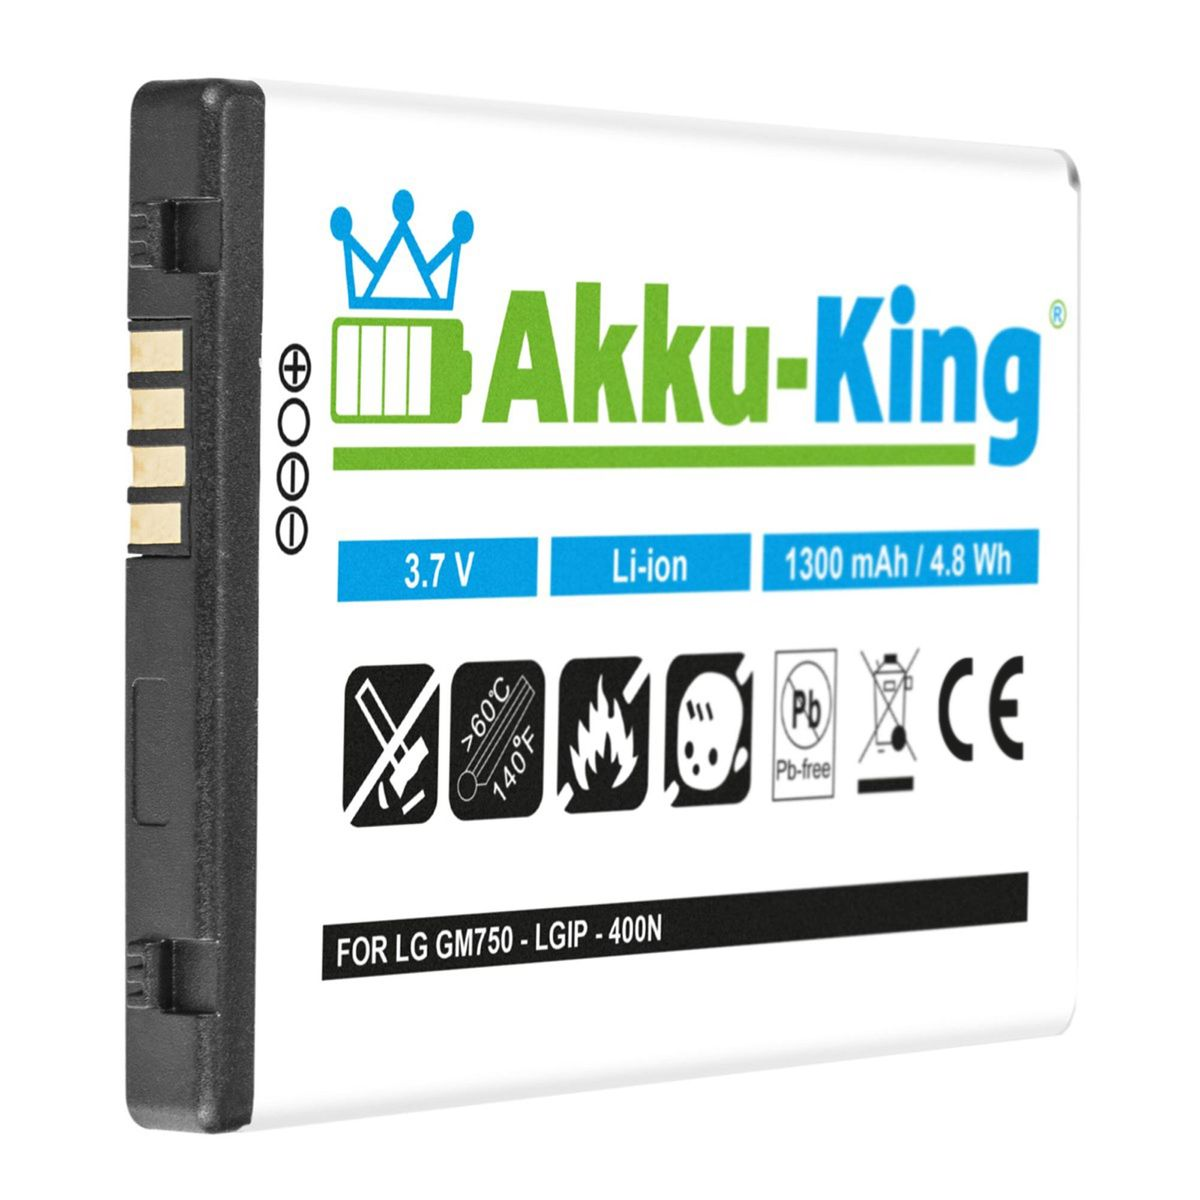 Li-Ion kompatibel Volt, 3.7 1300mAh LGIP-400N mit LG Handy-Akku, AKKU-KING Akku